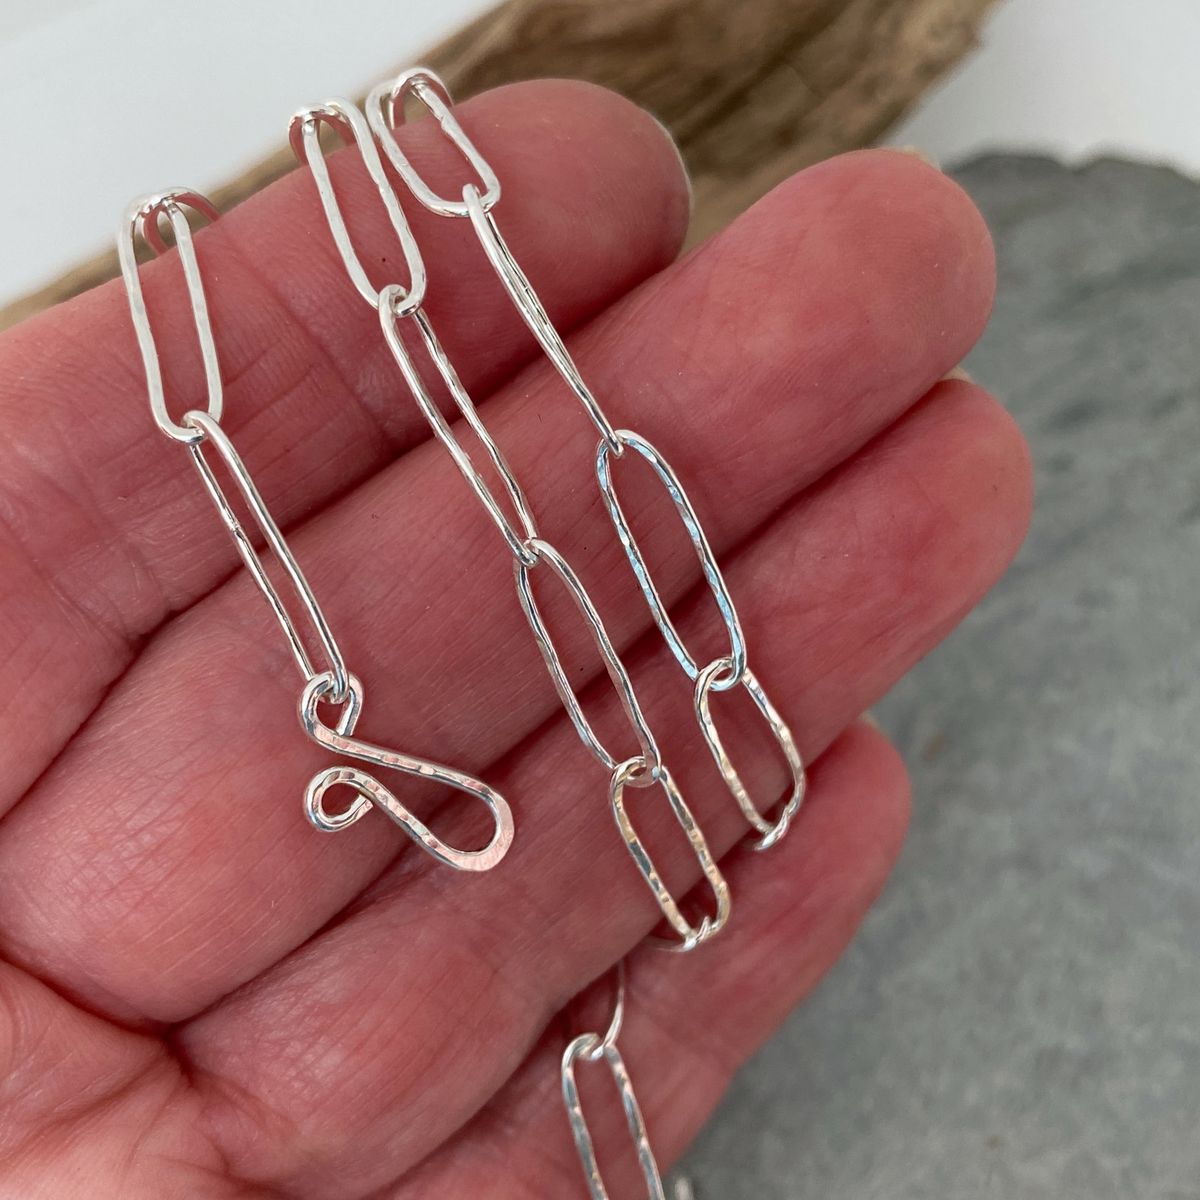 Paper clip necklace 3